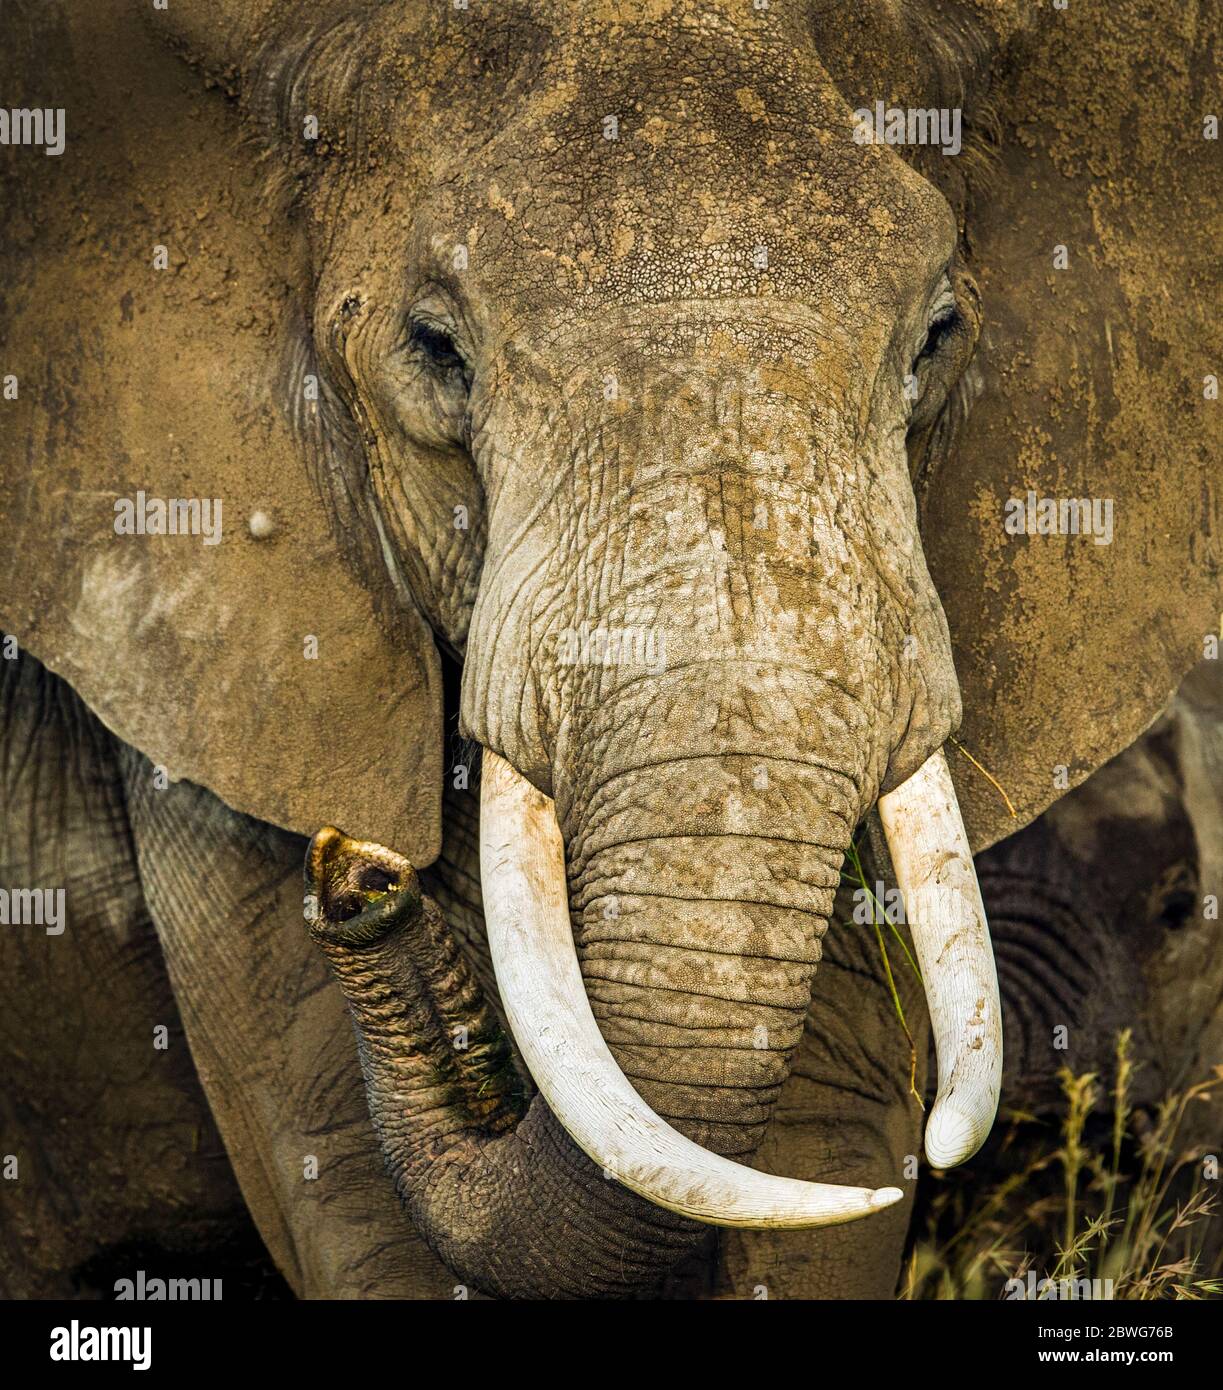 Kopfschuss eines afrikanischen Elefanten (Loxodonta africana), Ngorongoro Conservation Area, Tansania, Afrika Stockfoto